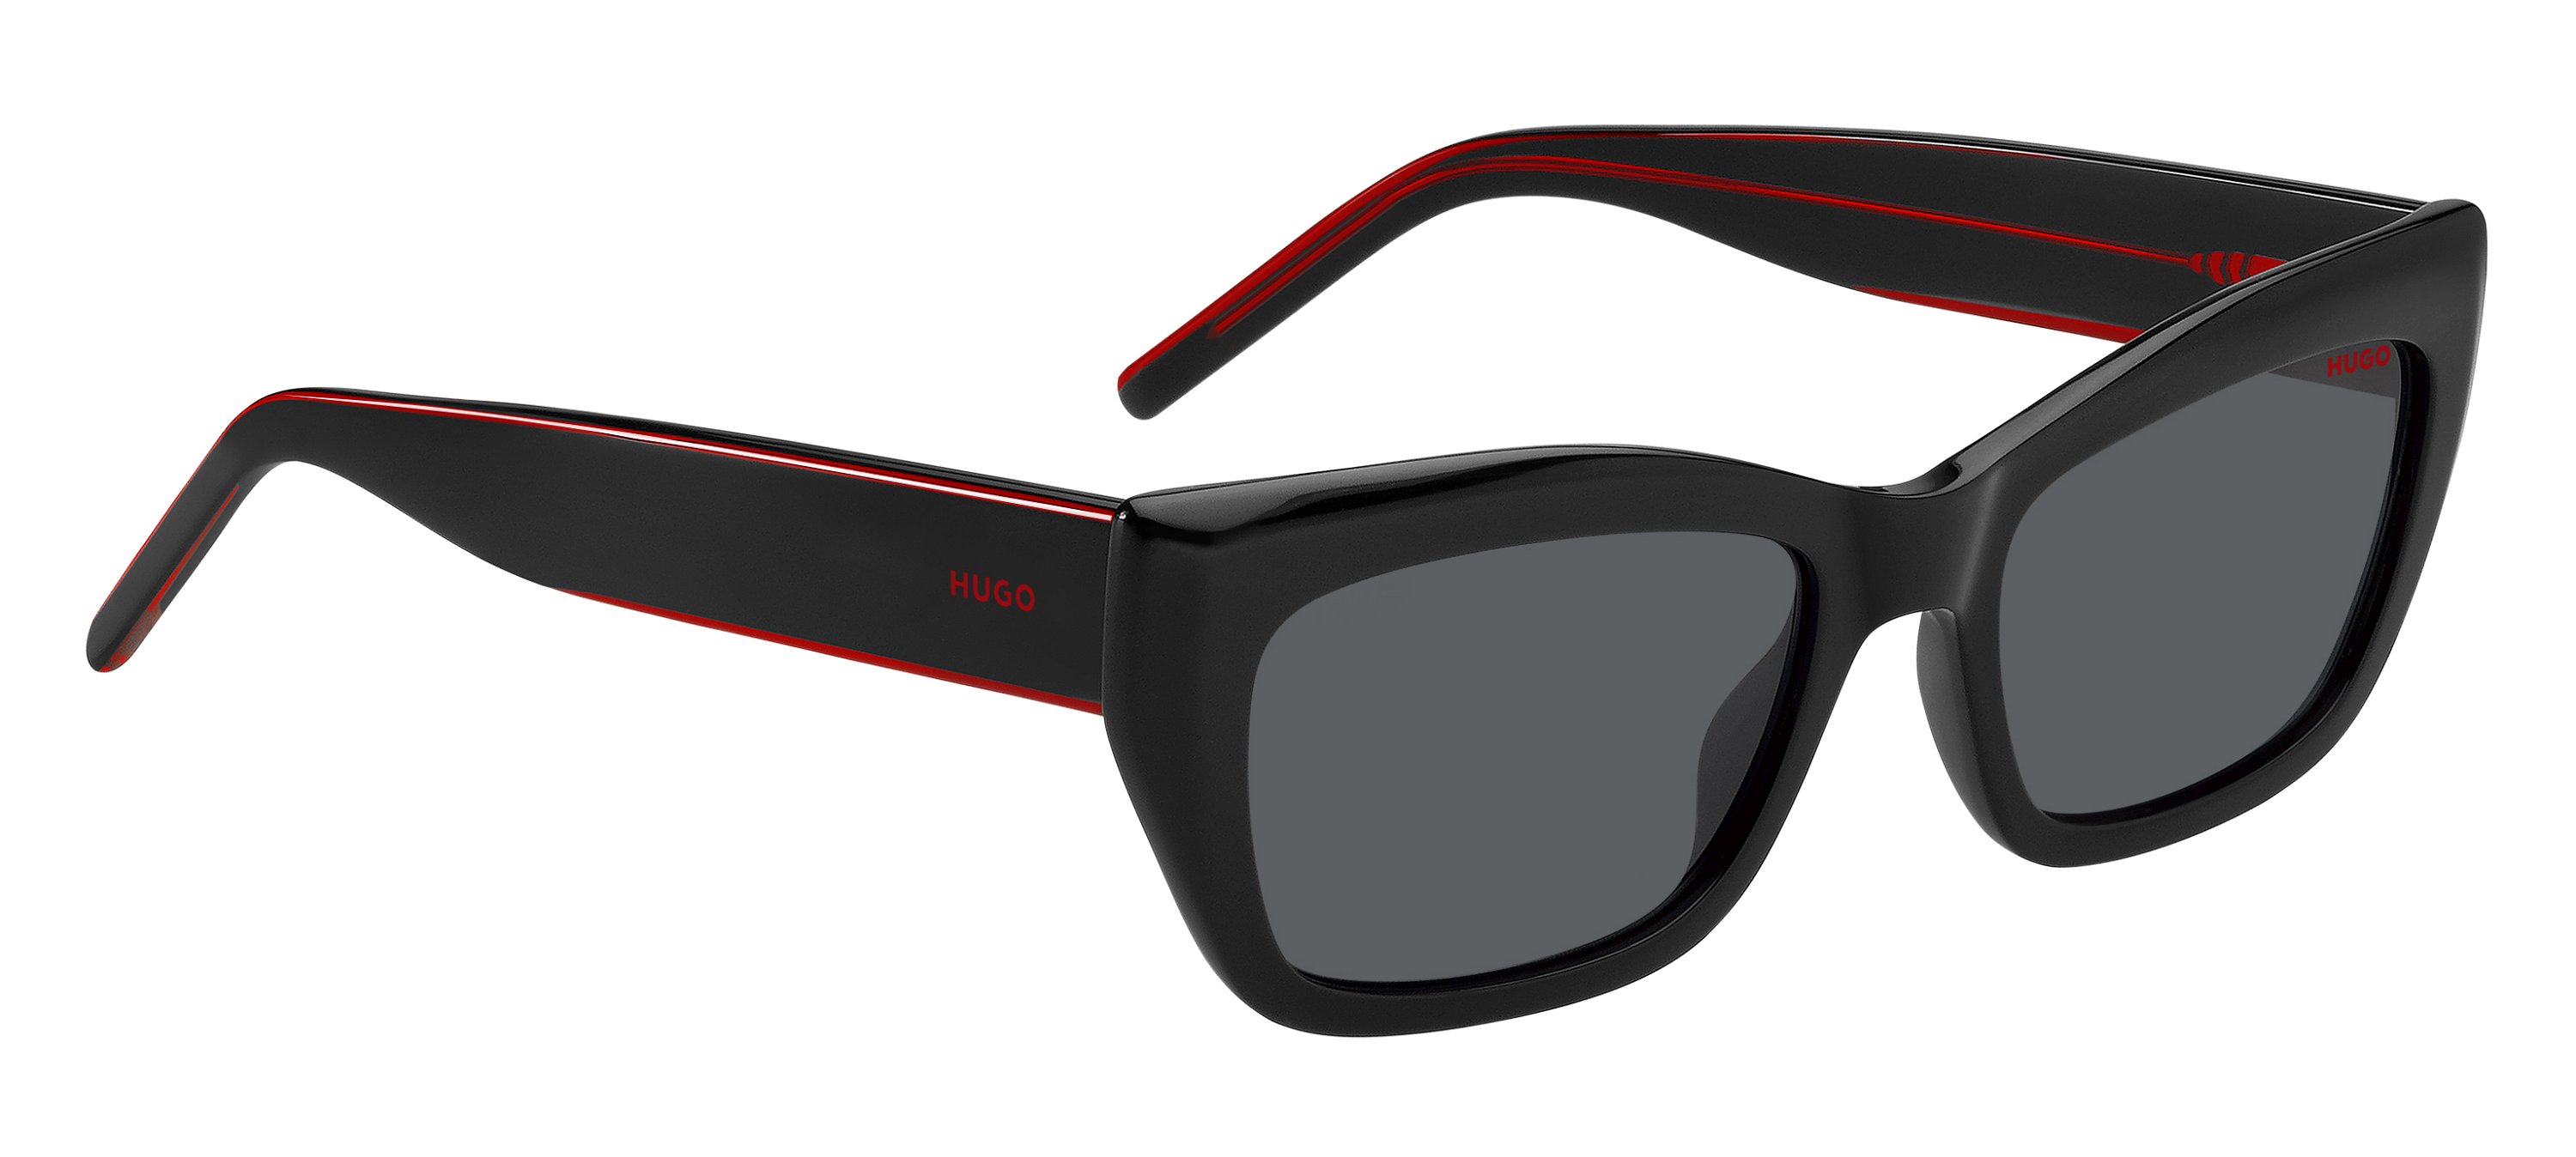 Das Bild zeigt die Sonnenbrille HG1301/S OIT von der Marke Hugo in schwarz.